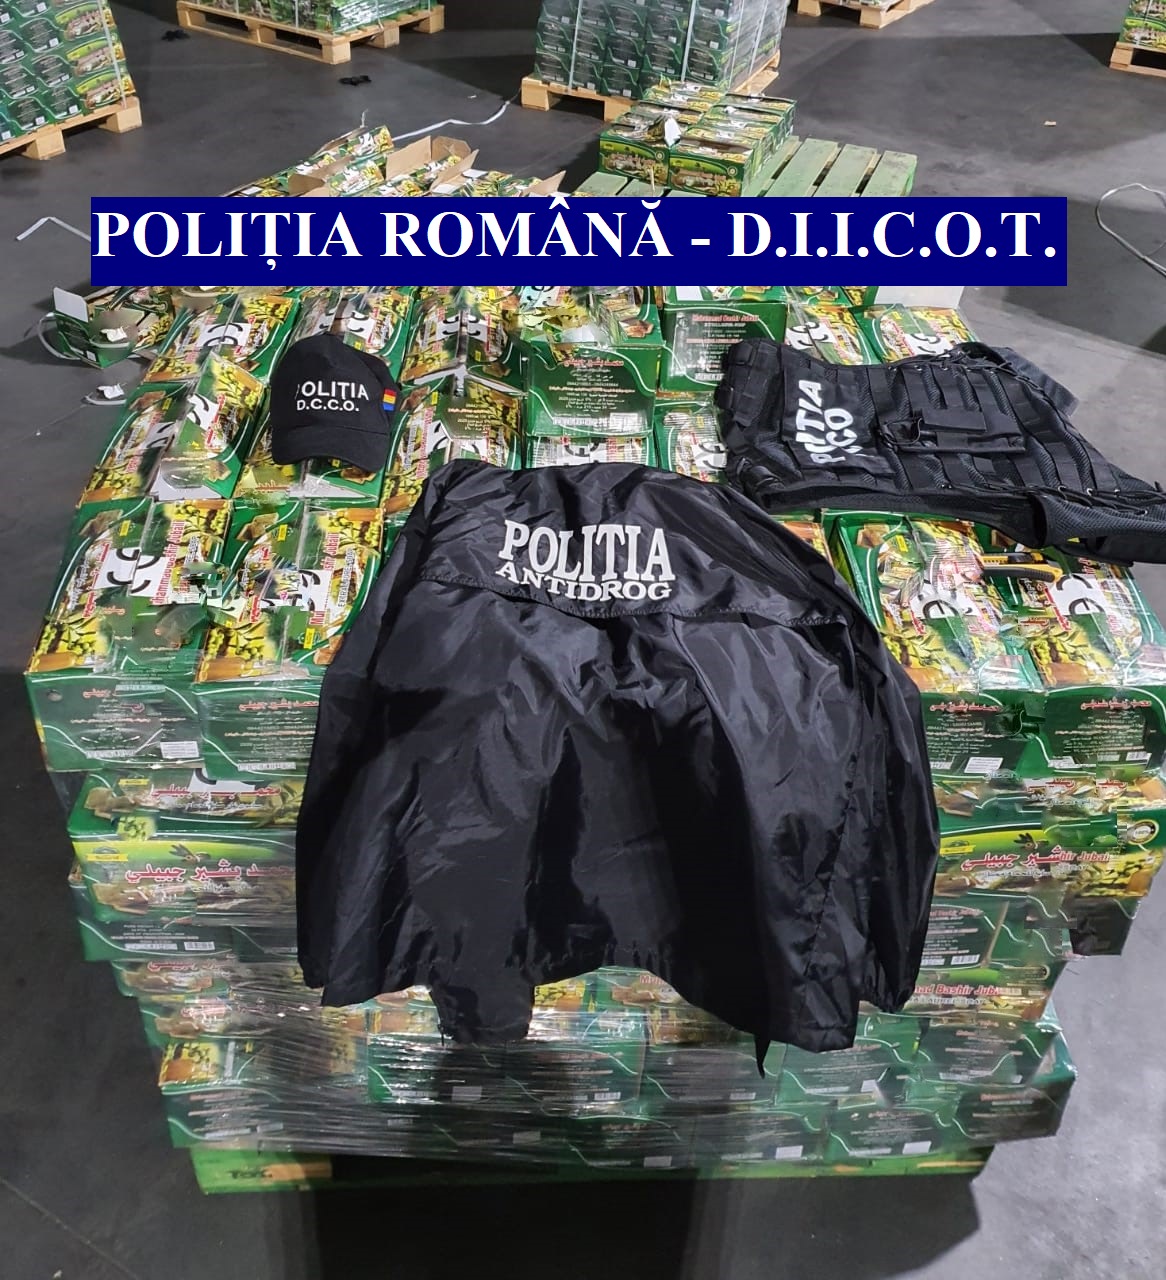 FOTO Captură istorică în România: 1.480 kg de hașiș și 751 kg de pastile de captagon